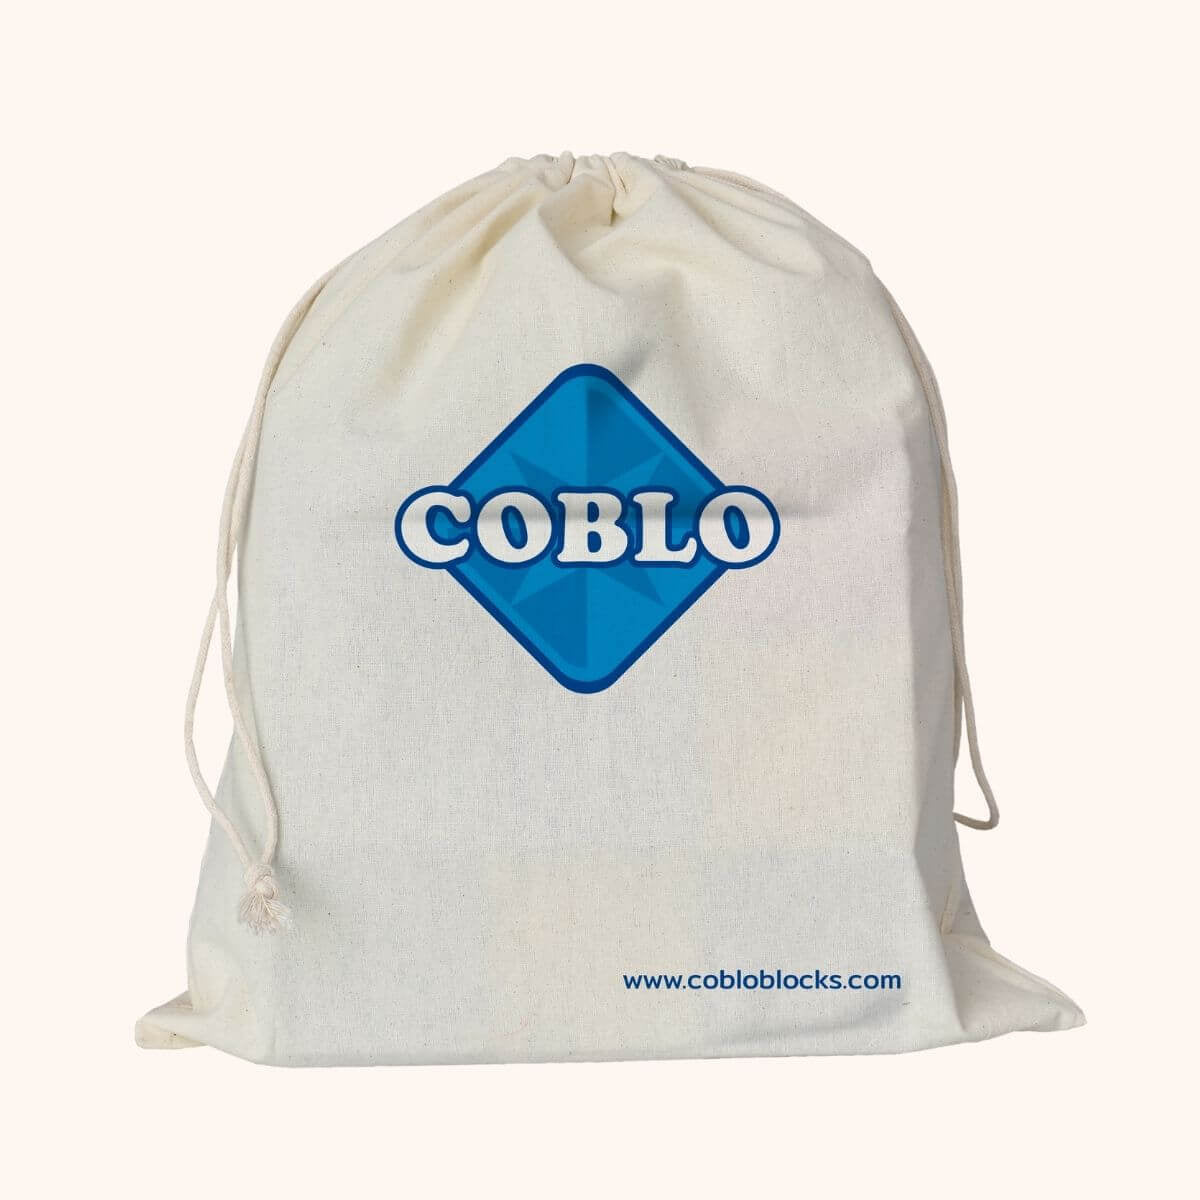 Veelzijdige bouwblokken: Coblo Classic 20 stuks! Gemaakt van hoogwaardig materiaal voor einde-loos bouw- en speelplezier, inclusief handige opbergzak. Perfect voor thuis, op school of onderweg! VanZus